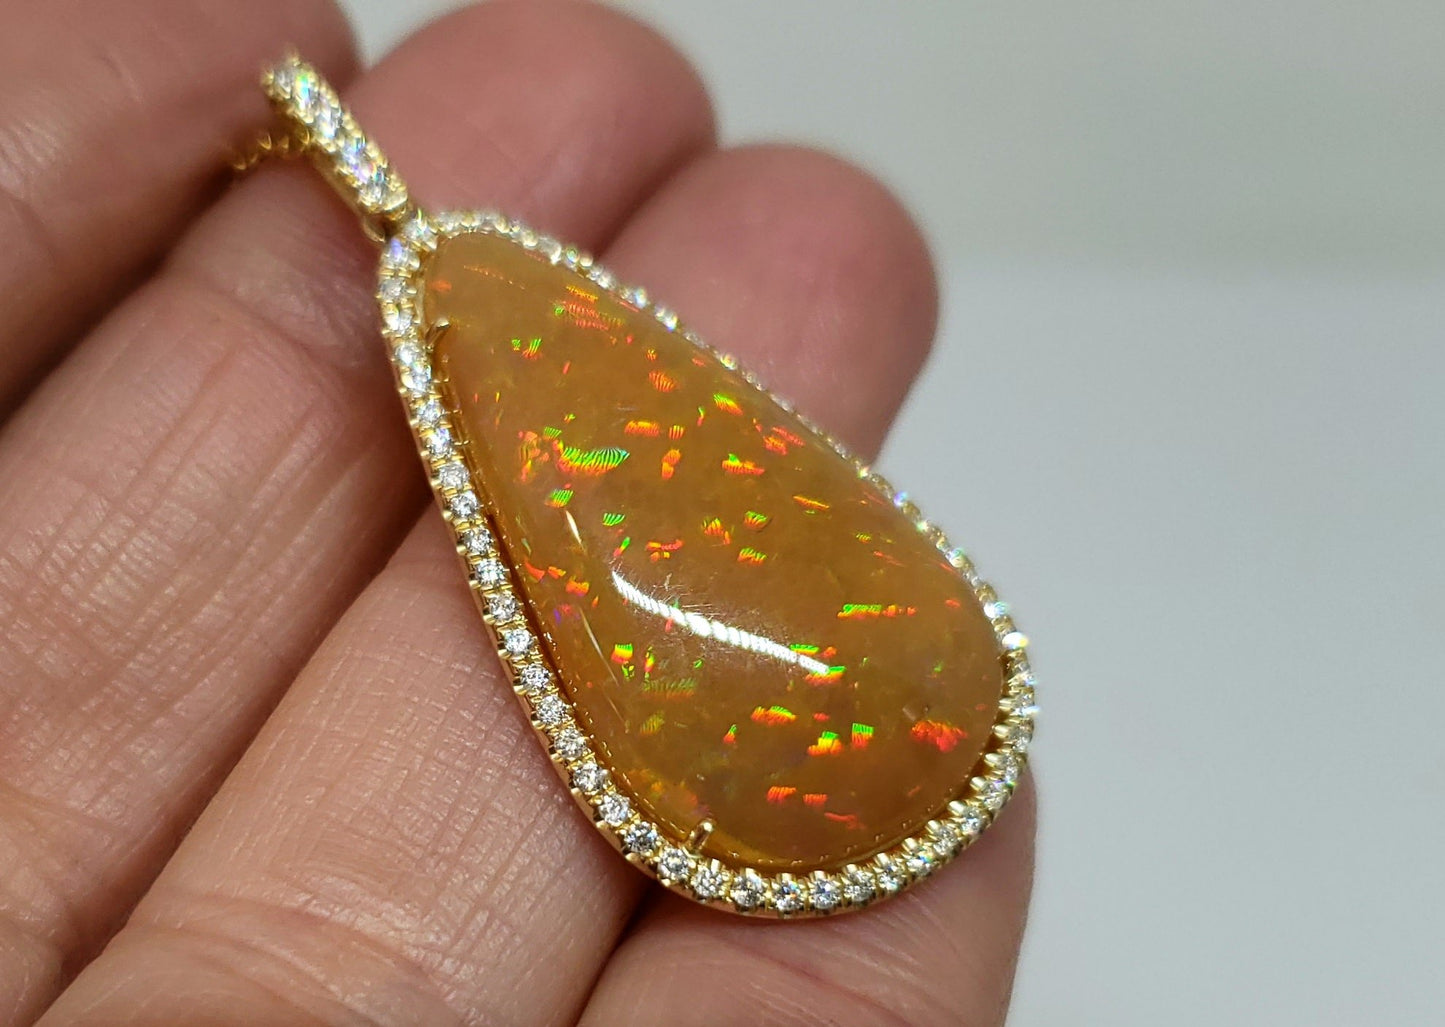 Brown Opal & Diamond Pendant 14k Gold